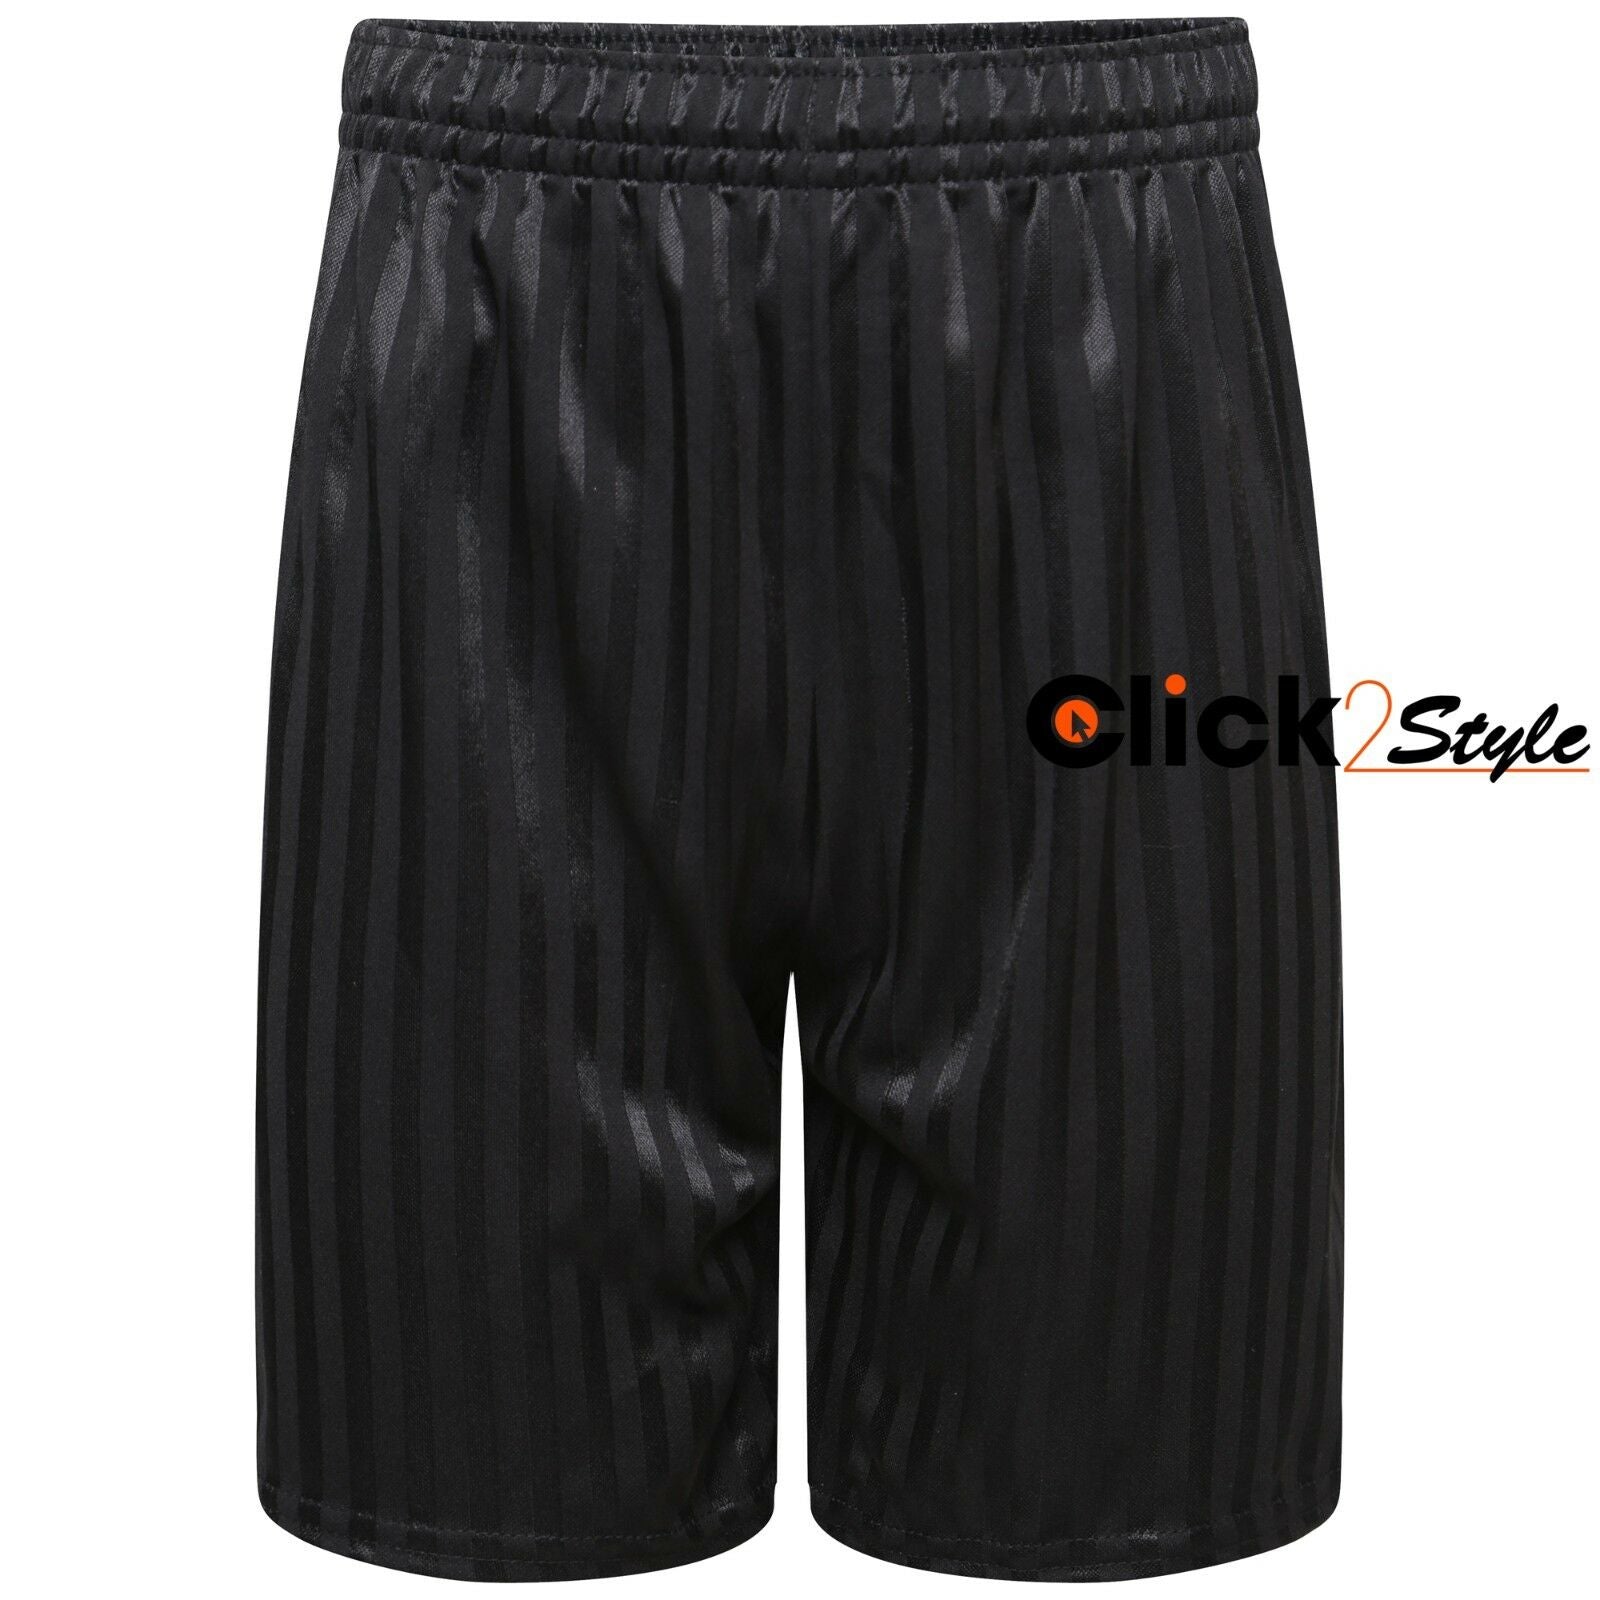 Unisex PE School Shadow Stripe Shorts Boys Girls Adult Football Gym Sports Short -Black